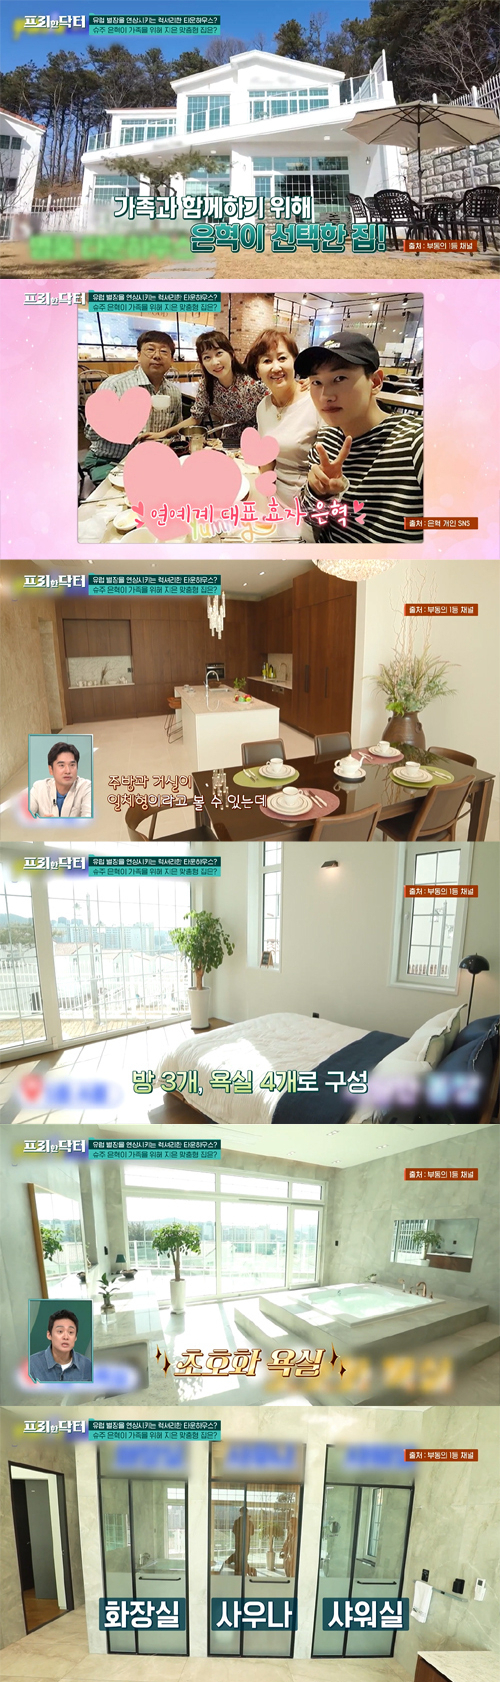 부모님께 집을 선물한 남다른 효심 FLEX 스타 그룹 슈퍼주니어 은혁./tvN '프리한 닥터' 방송 캡처